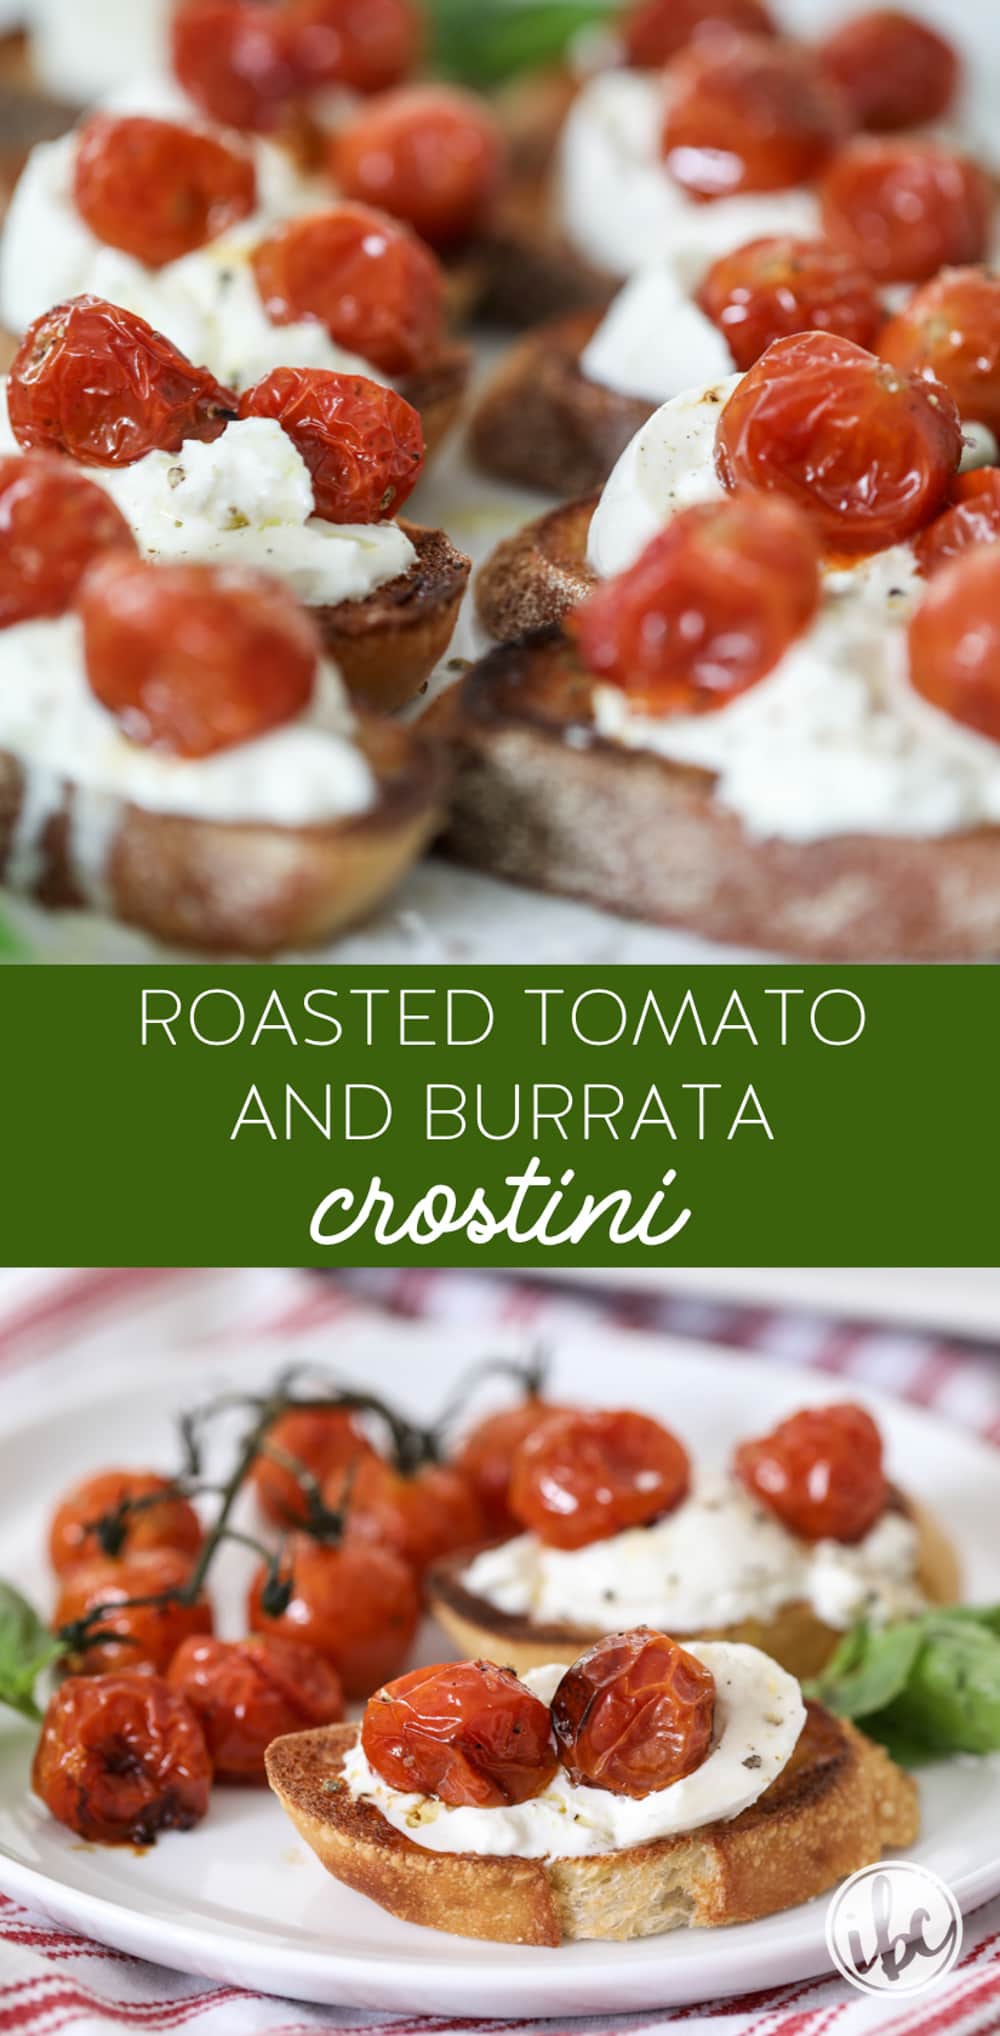 Delicious Roasted Tomato and Burrata Crostini Appetizer Recipe #roasted #tomato #burrata #crostini #appetizer #recipe